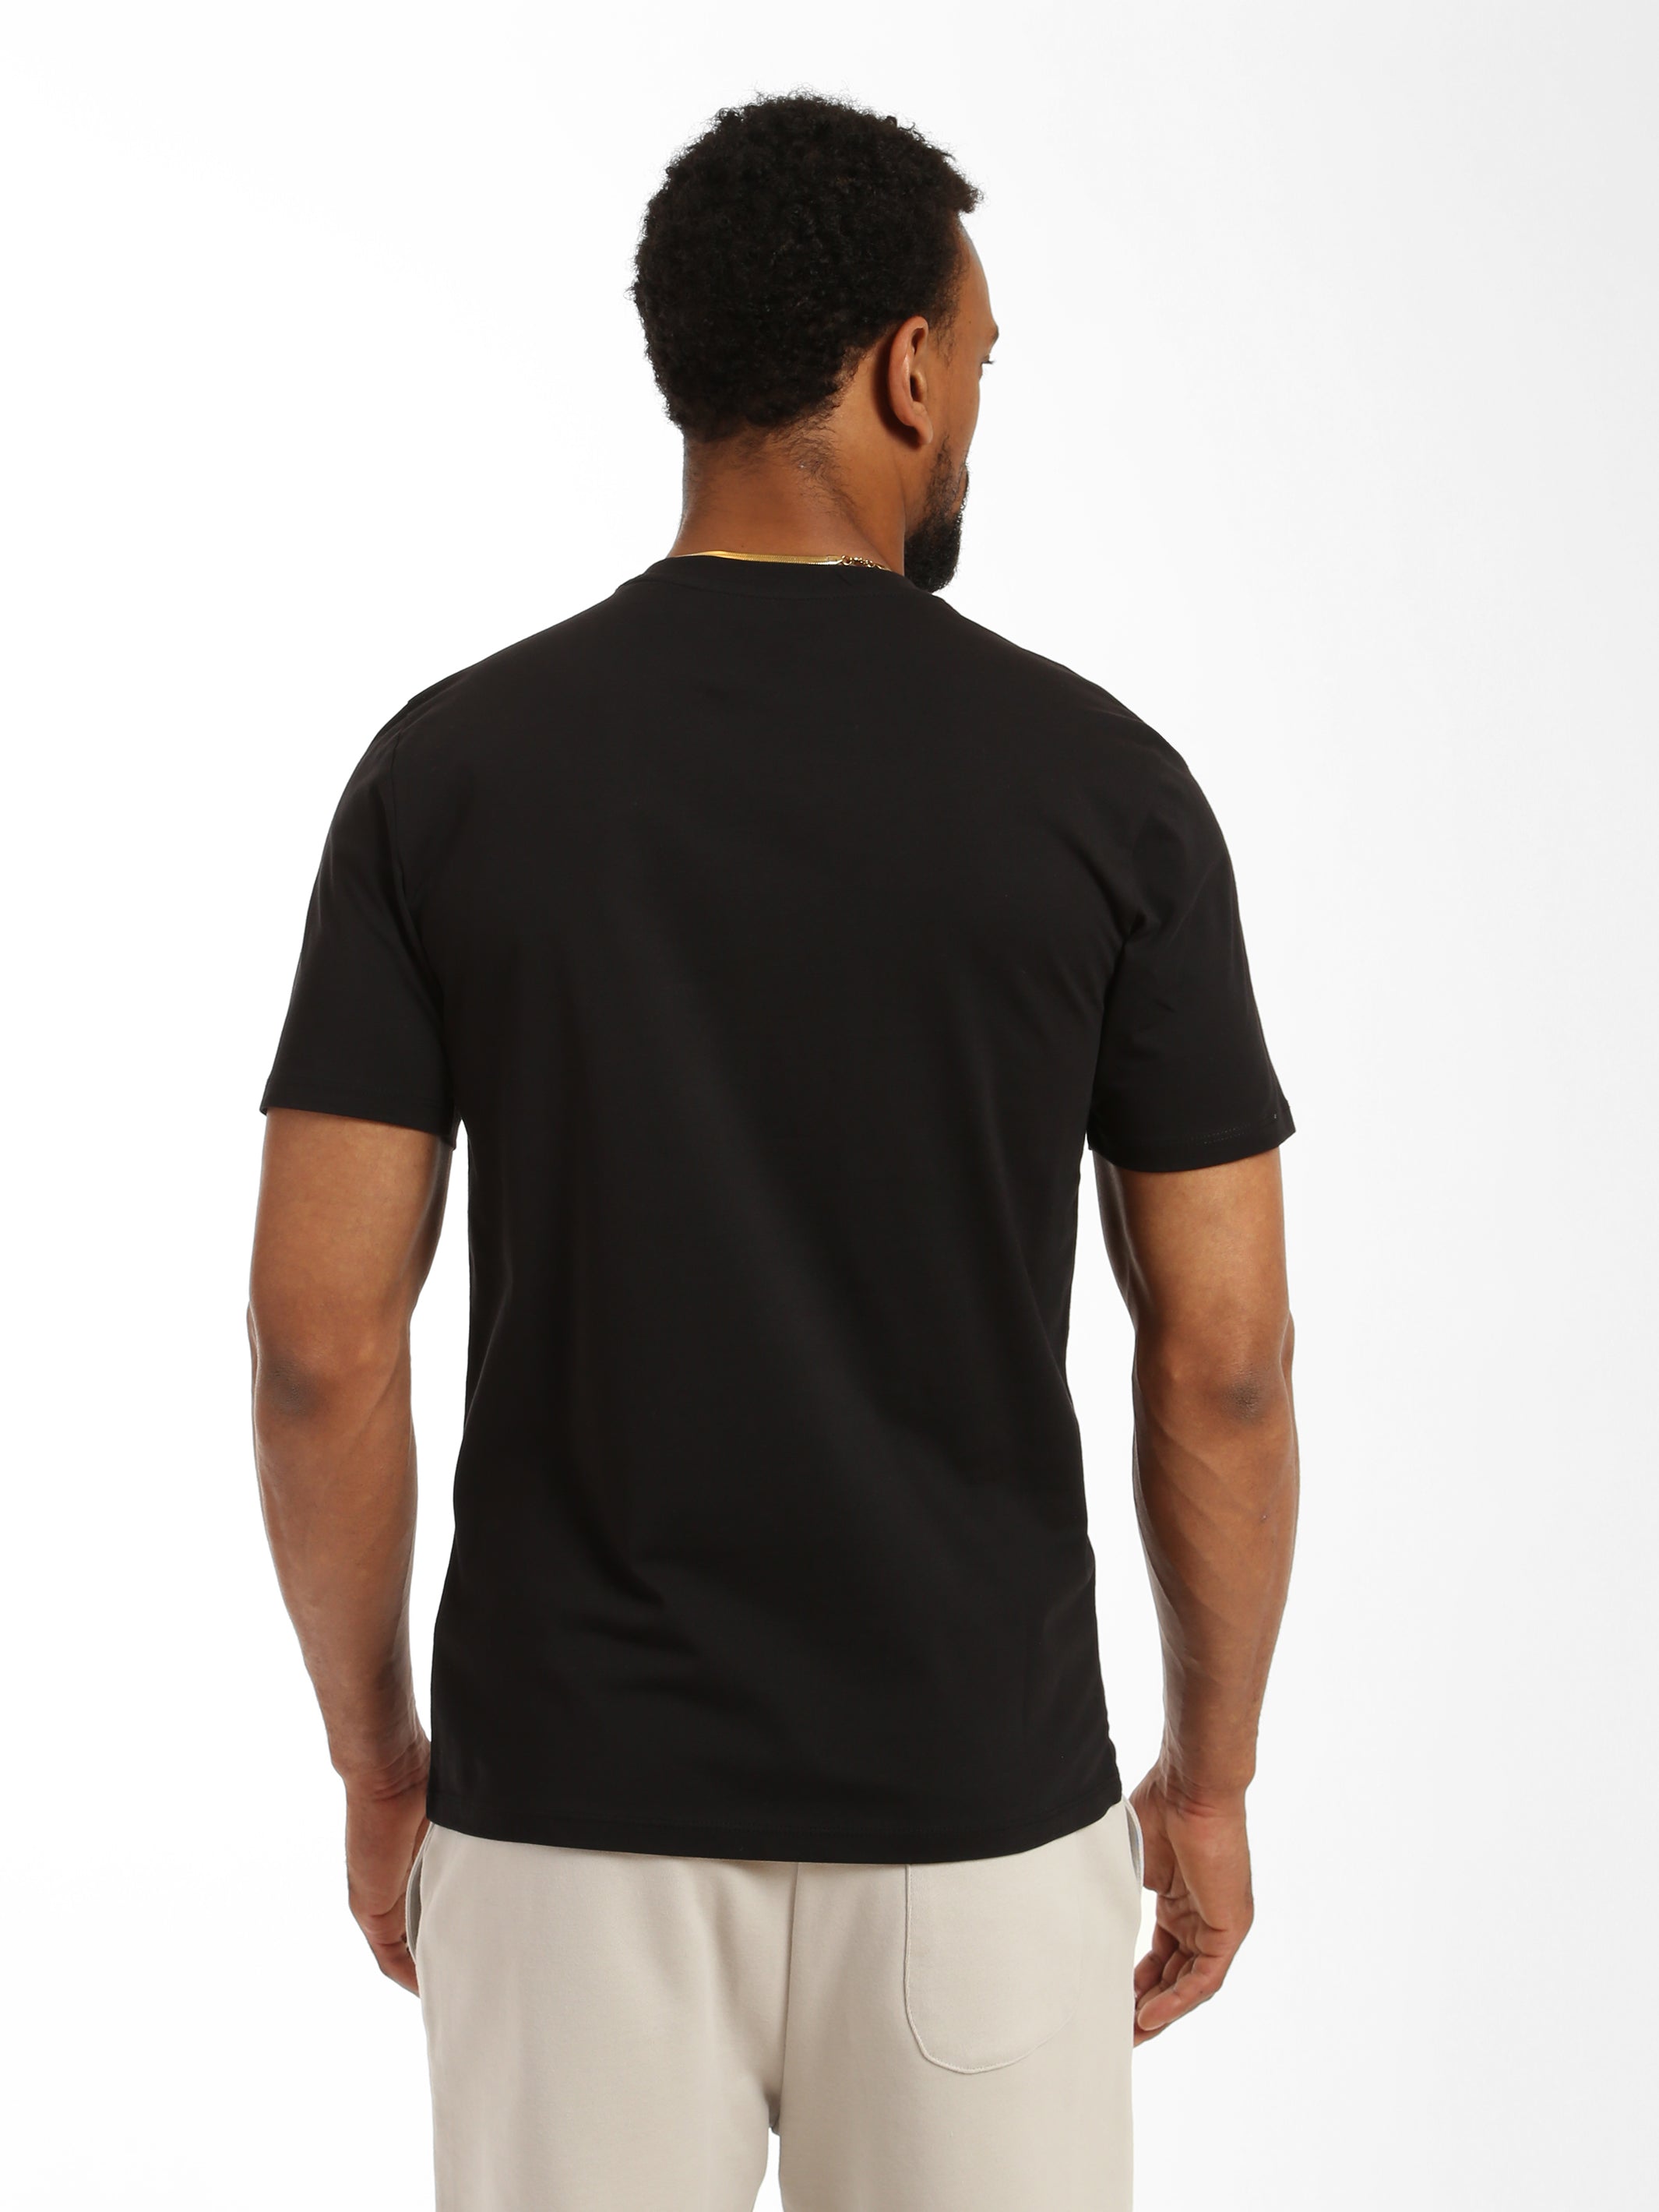 Men's Print T-shirt in Black - BROOKLYN INDUSTRIES